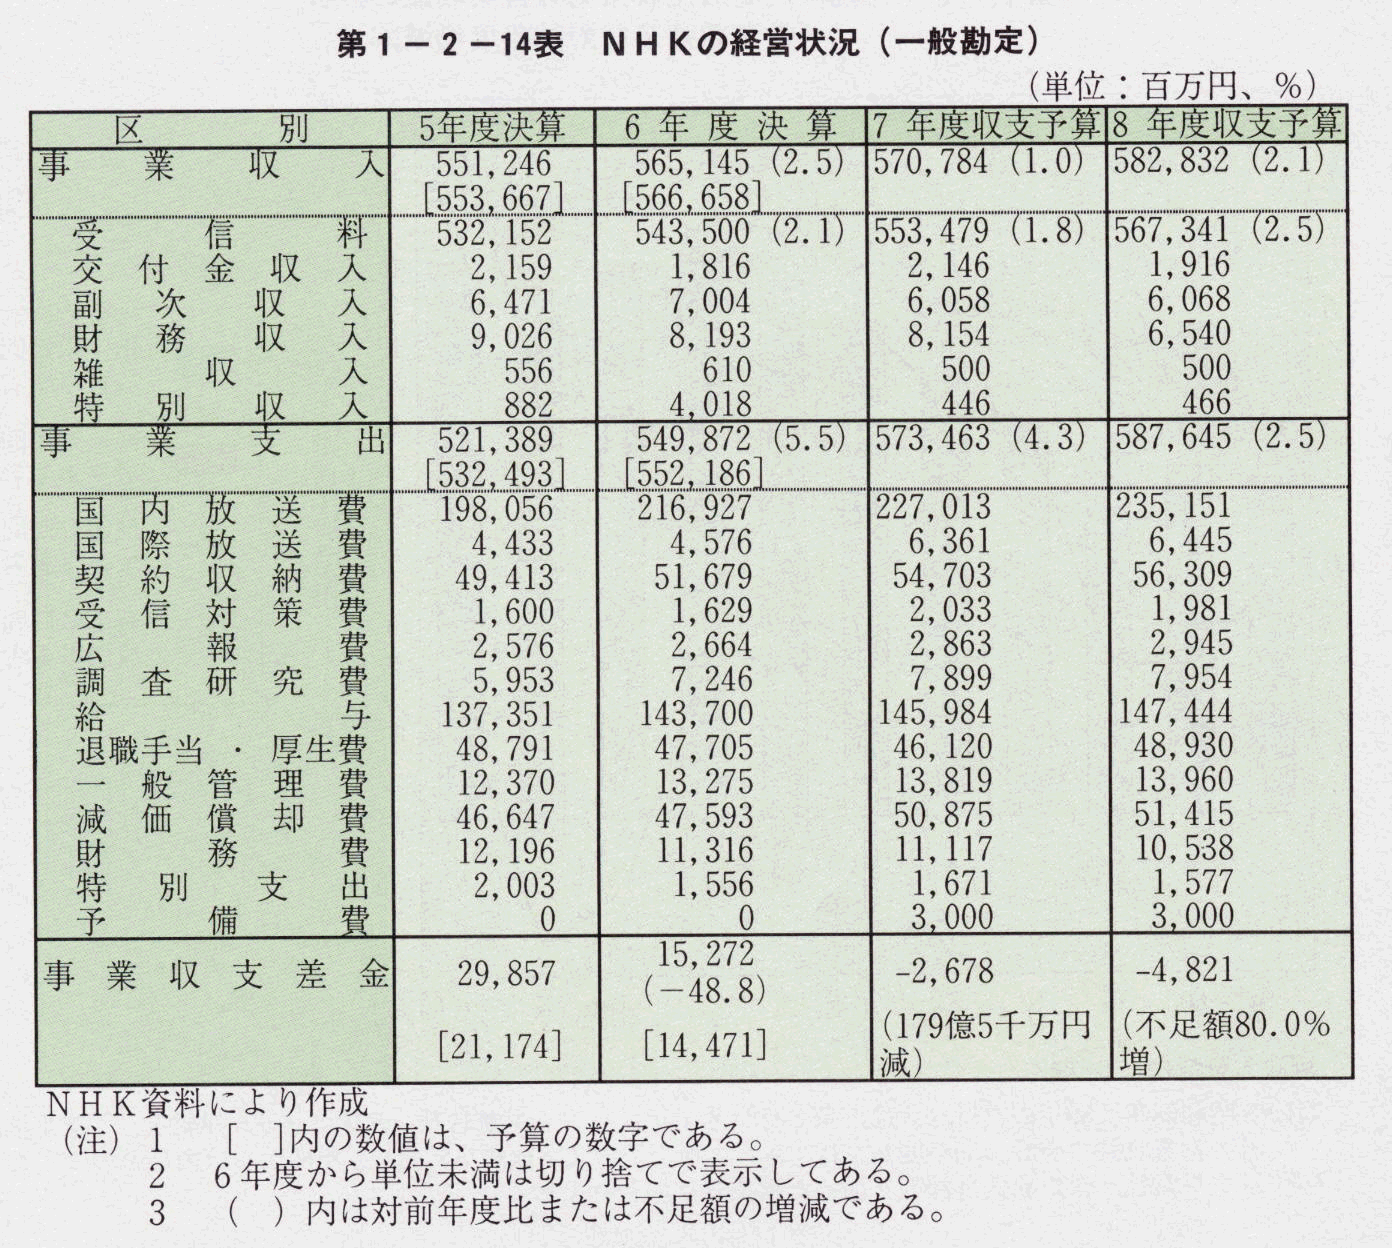 第1-2-14表 NHKの経営状況(一般勘定)